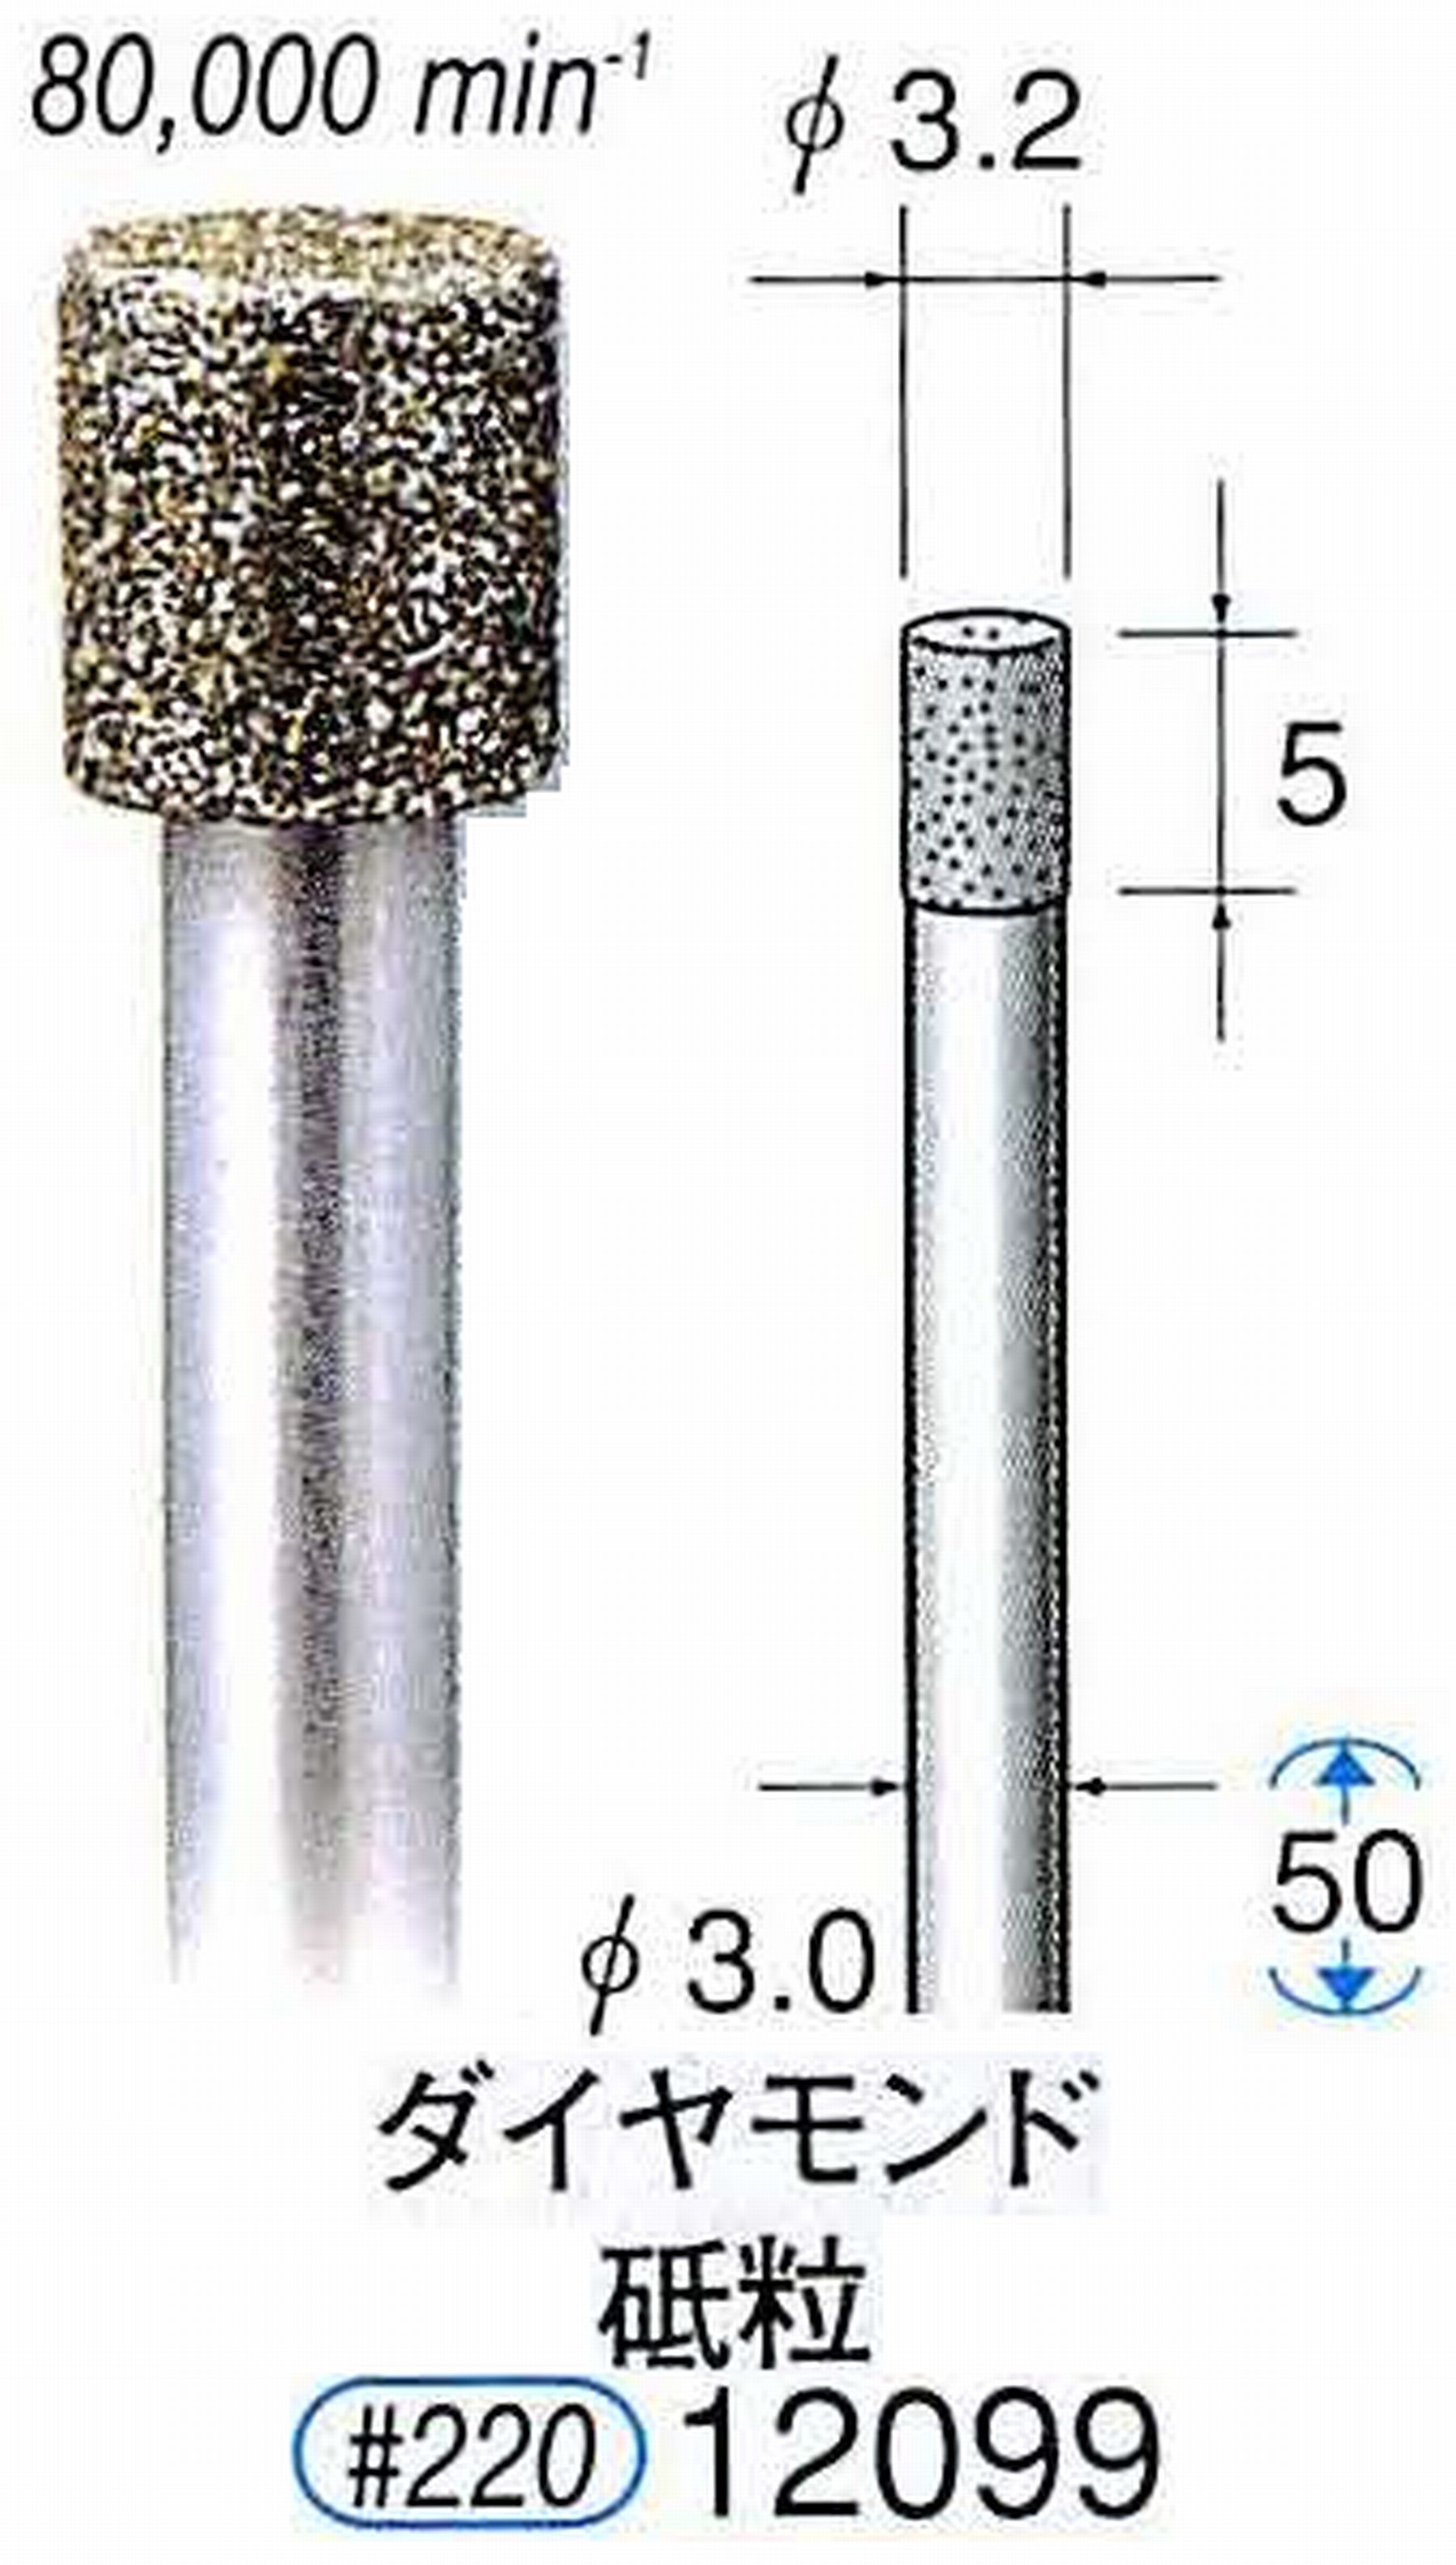 ナカニシ/NAKANISHI 電着ダイヤモンド ダイヤモンド砥粒 軸径(シャンク)φ3.0mm 12099